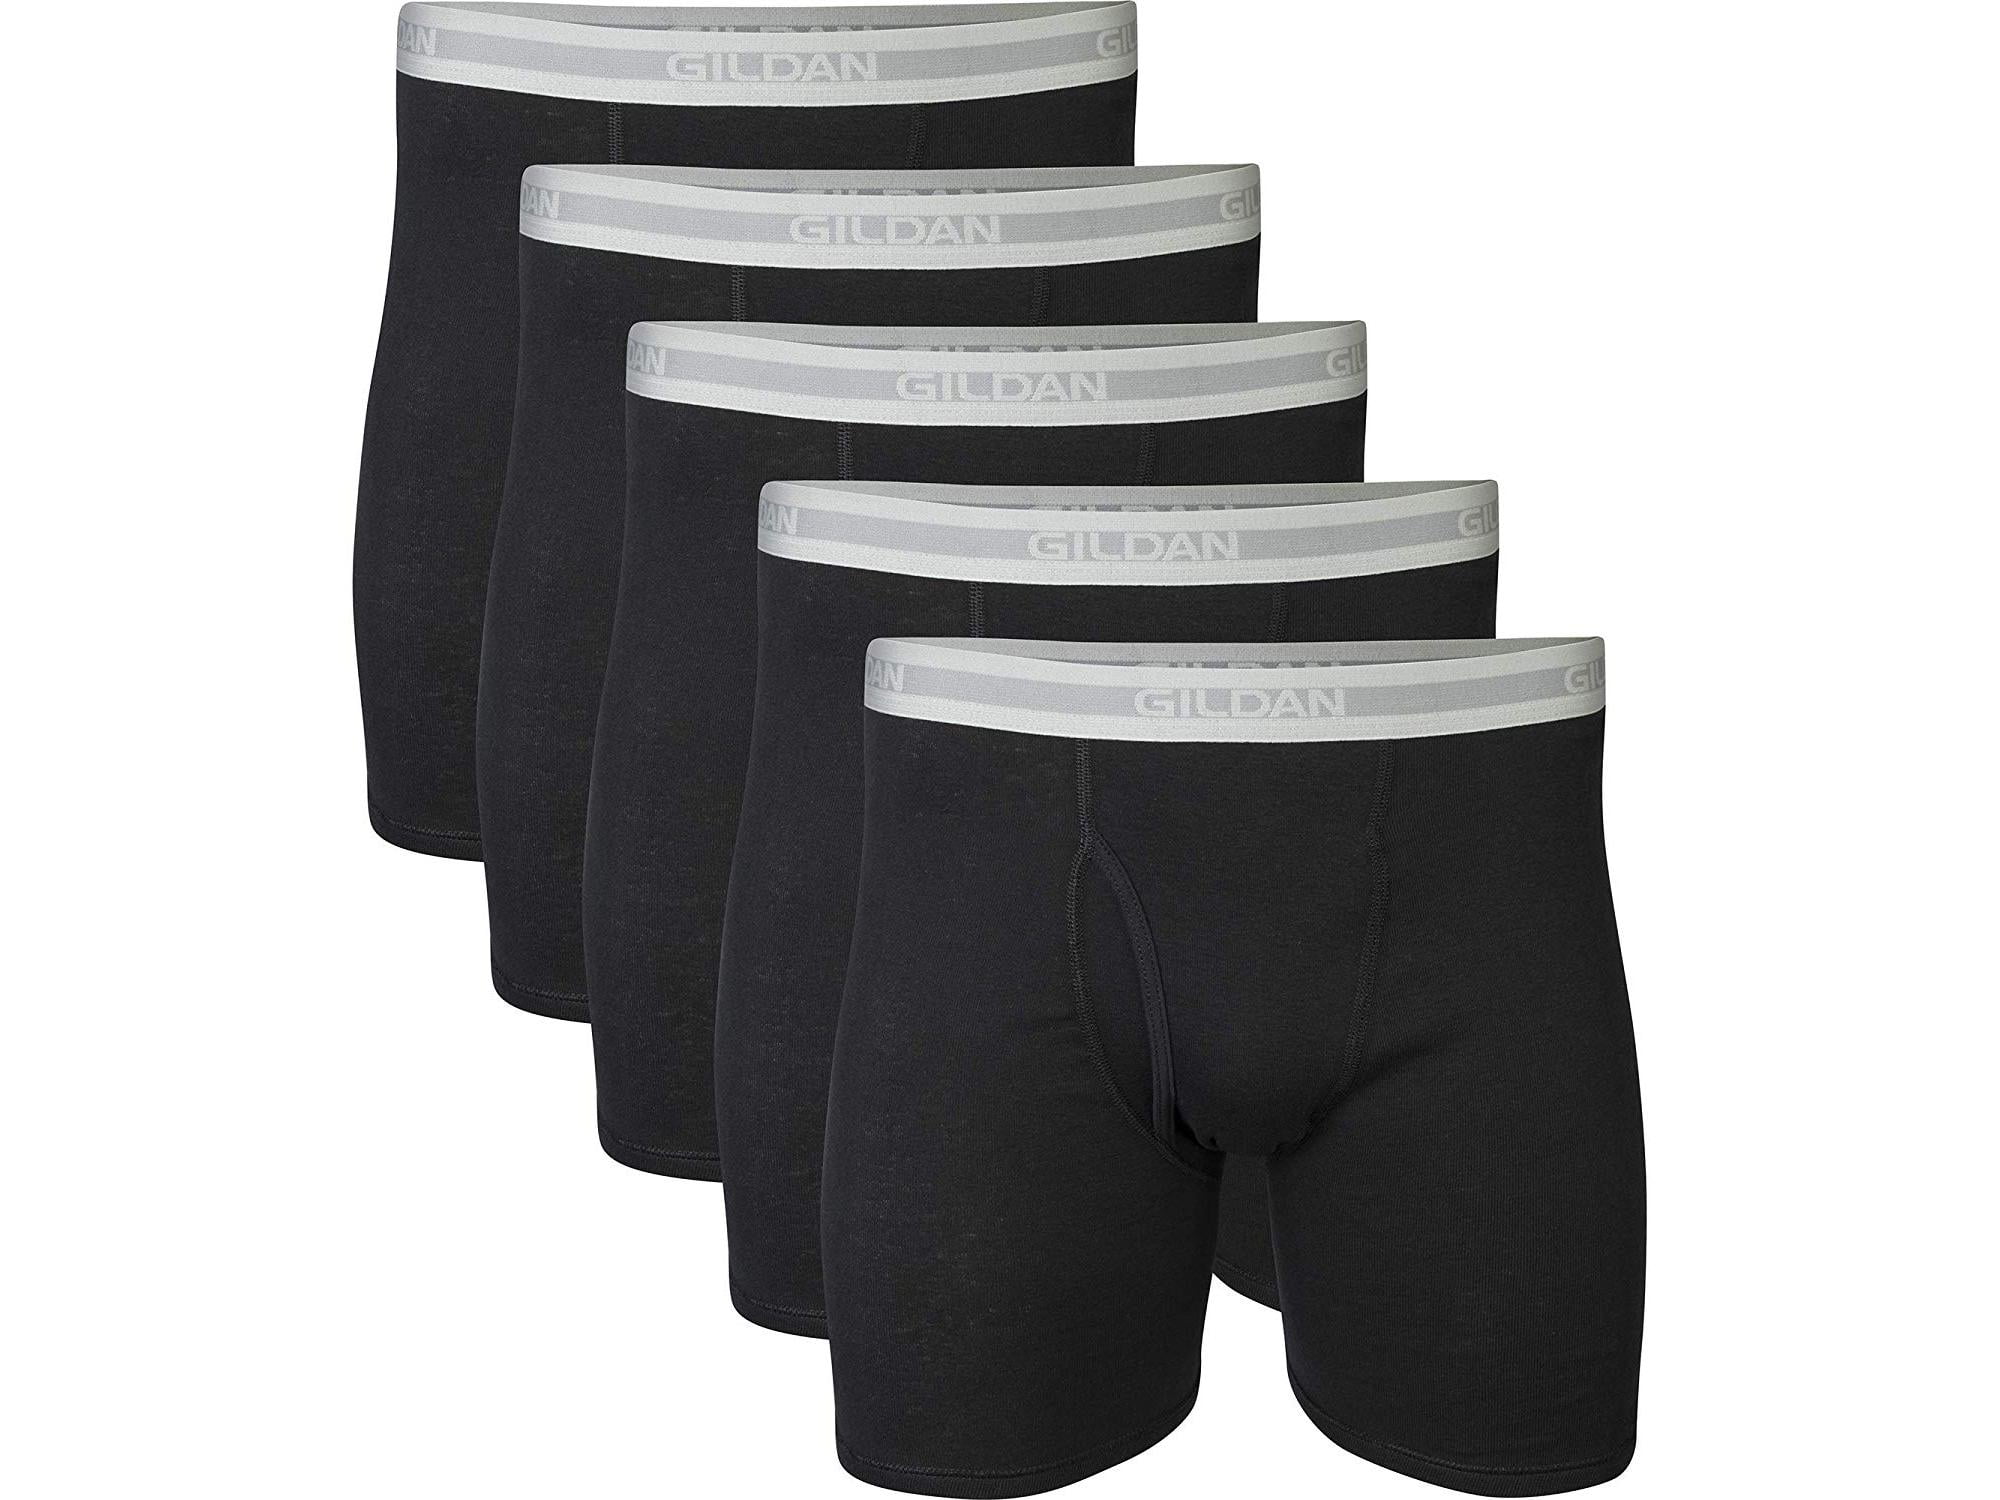 Gildan Men's Regular Leg Boxer Brief Multipack, Black (5, Black